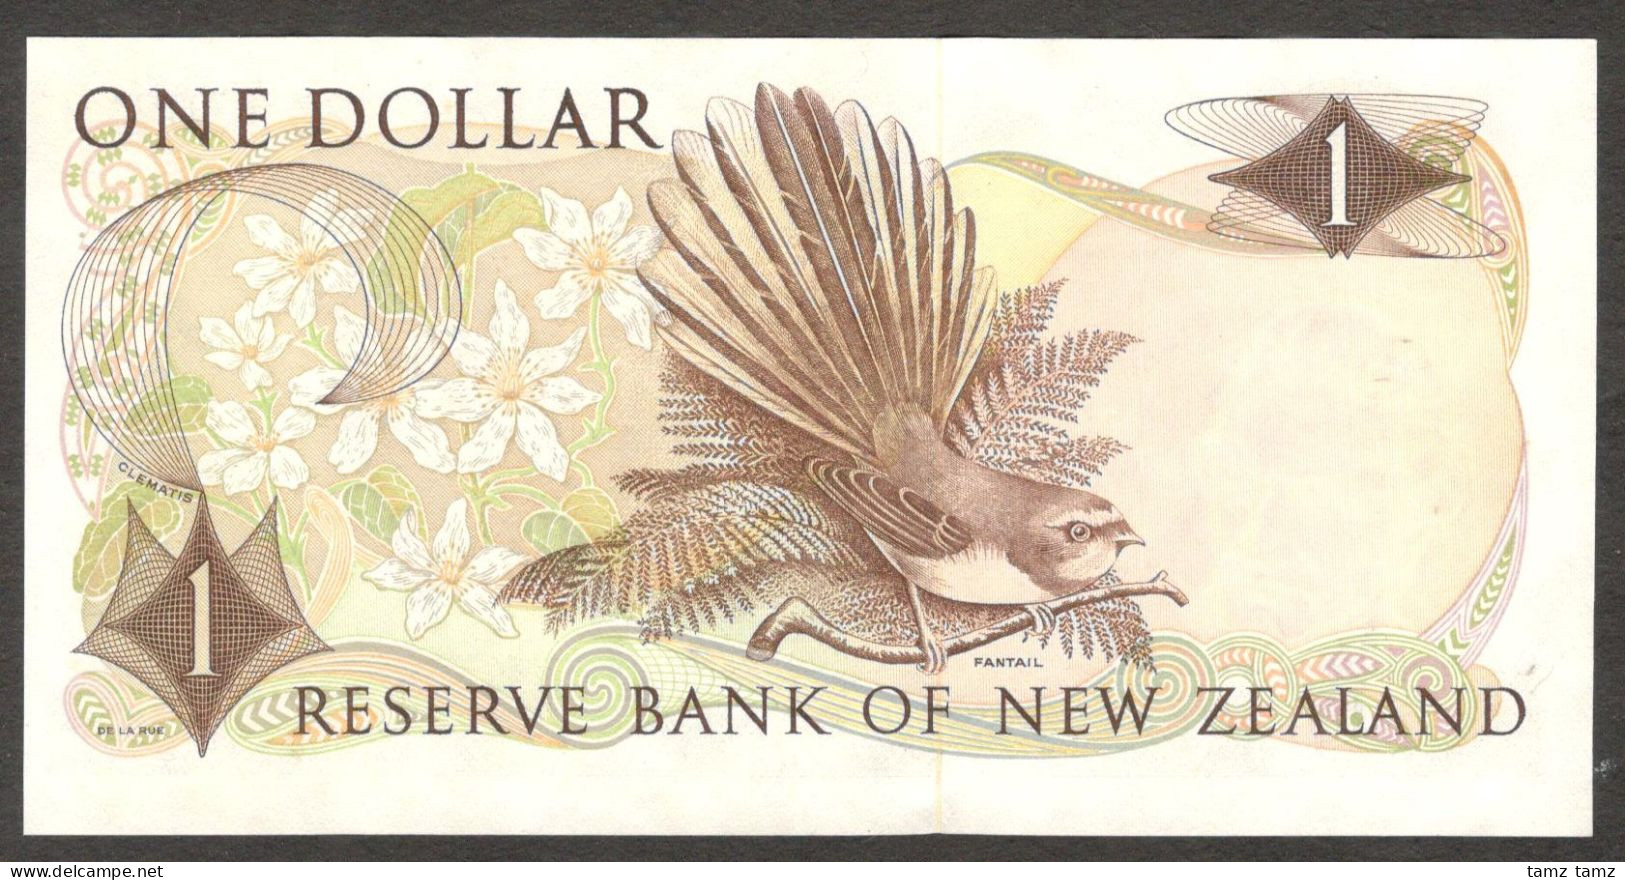 New Zealand 1 Dollar Queen Elizabeth II P-163d 1977-1981 UNC - Nuova Zelanda